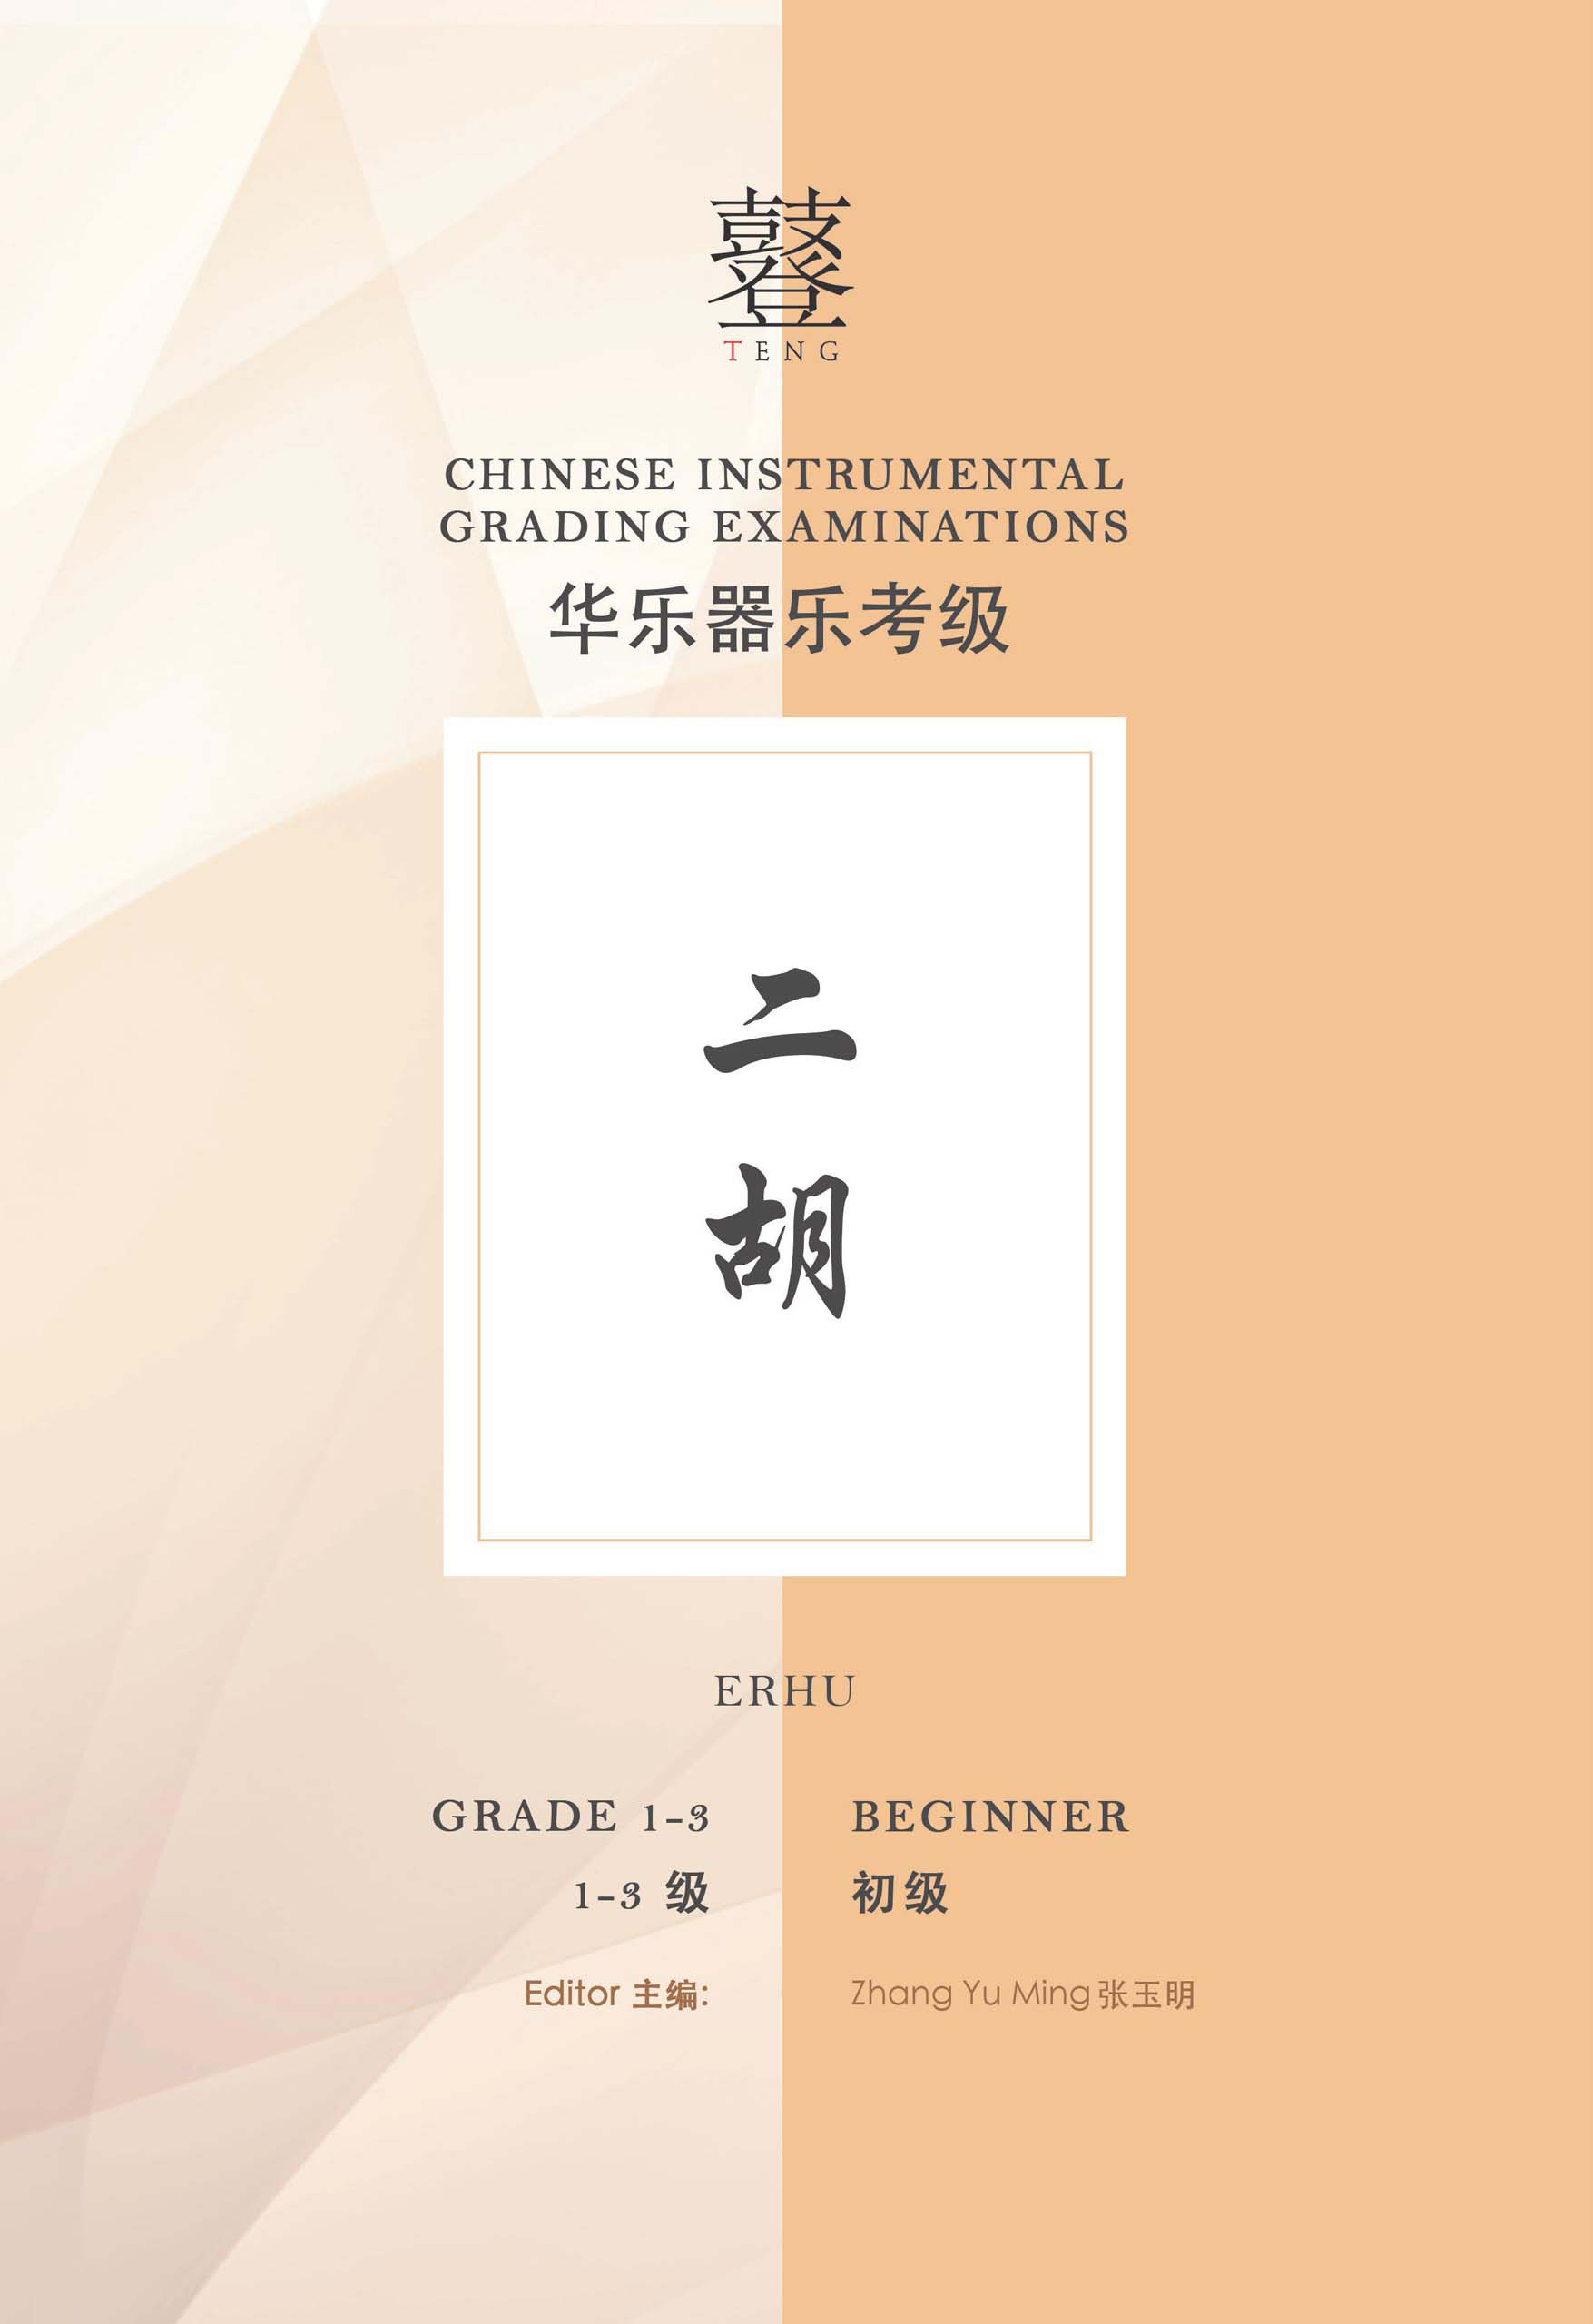 Erhu Grading Examination Book by Teng Beginner Grade 1-3 featured photo